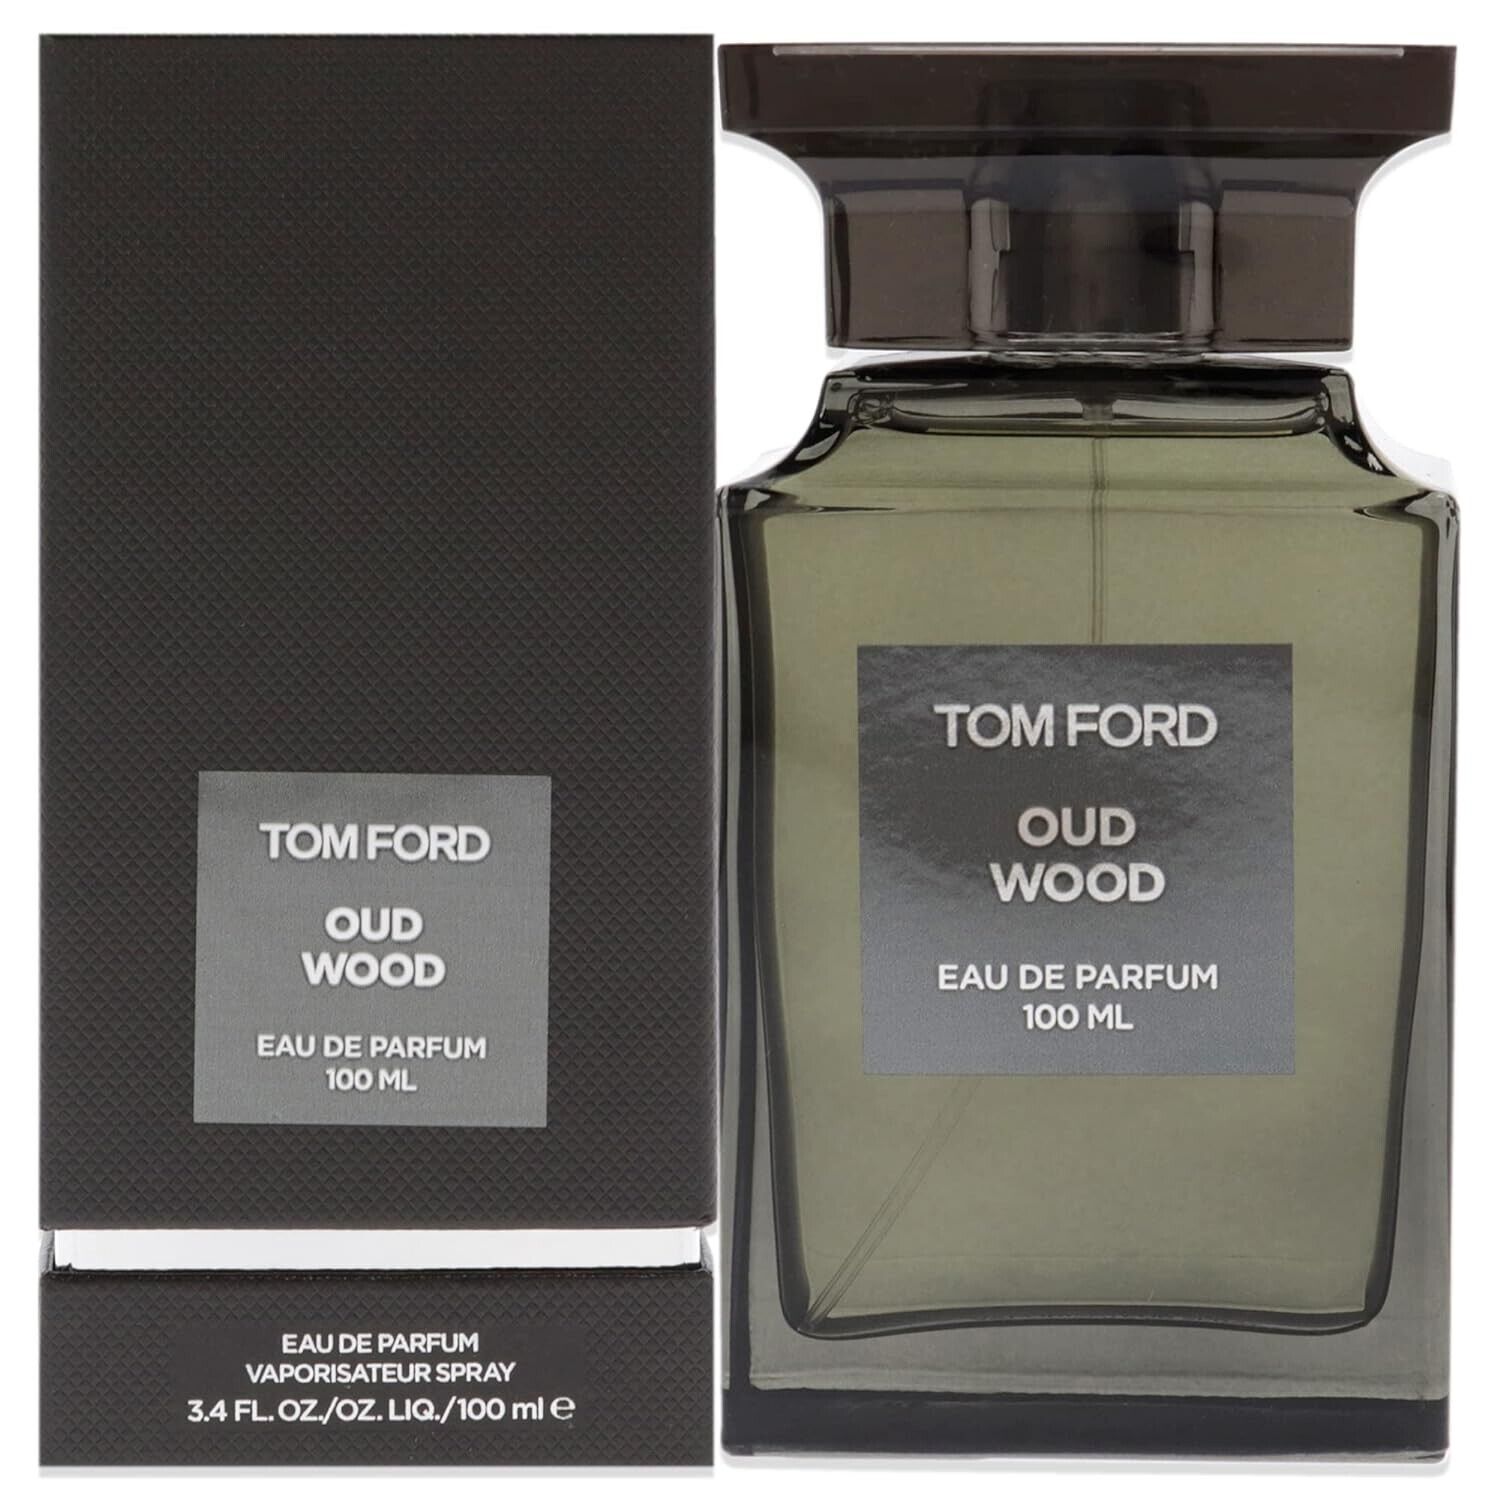 Tom Ford Oud Wood Eau de Parfum 3.4 fl oz 100ml Spray Sealed New Box